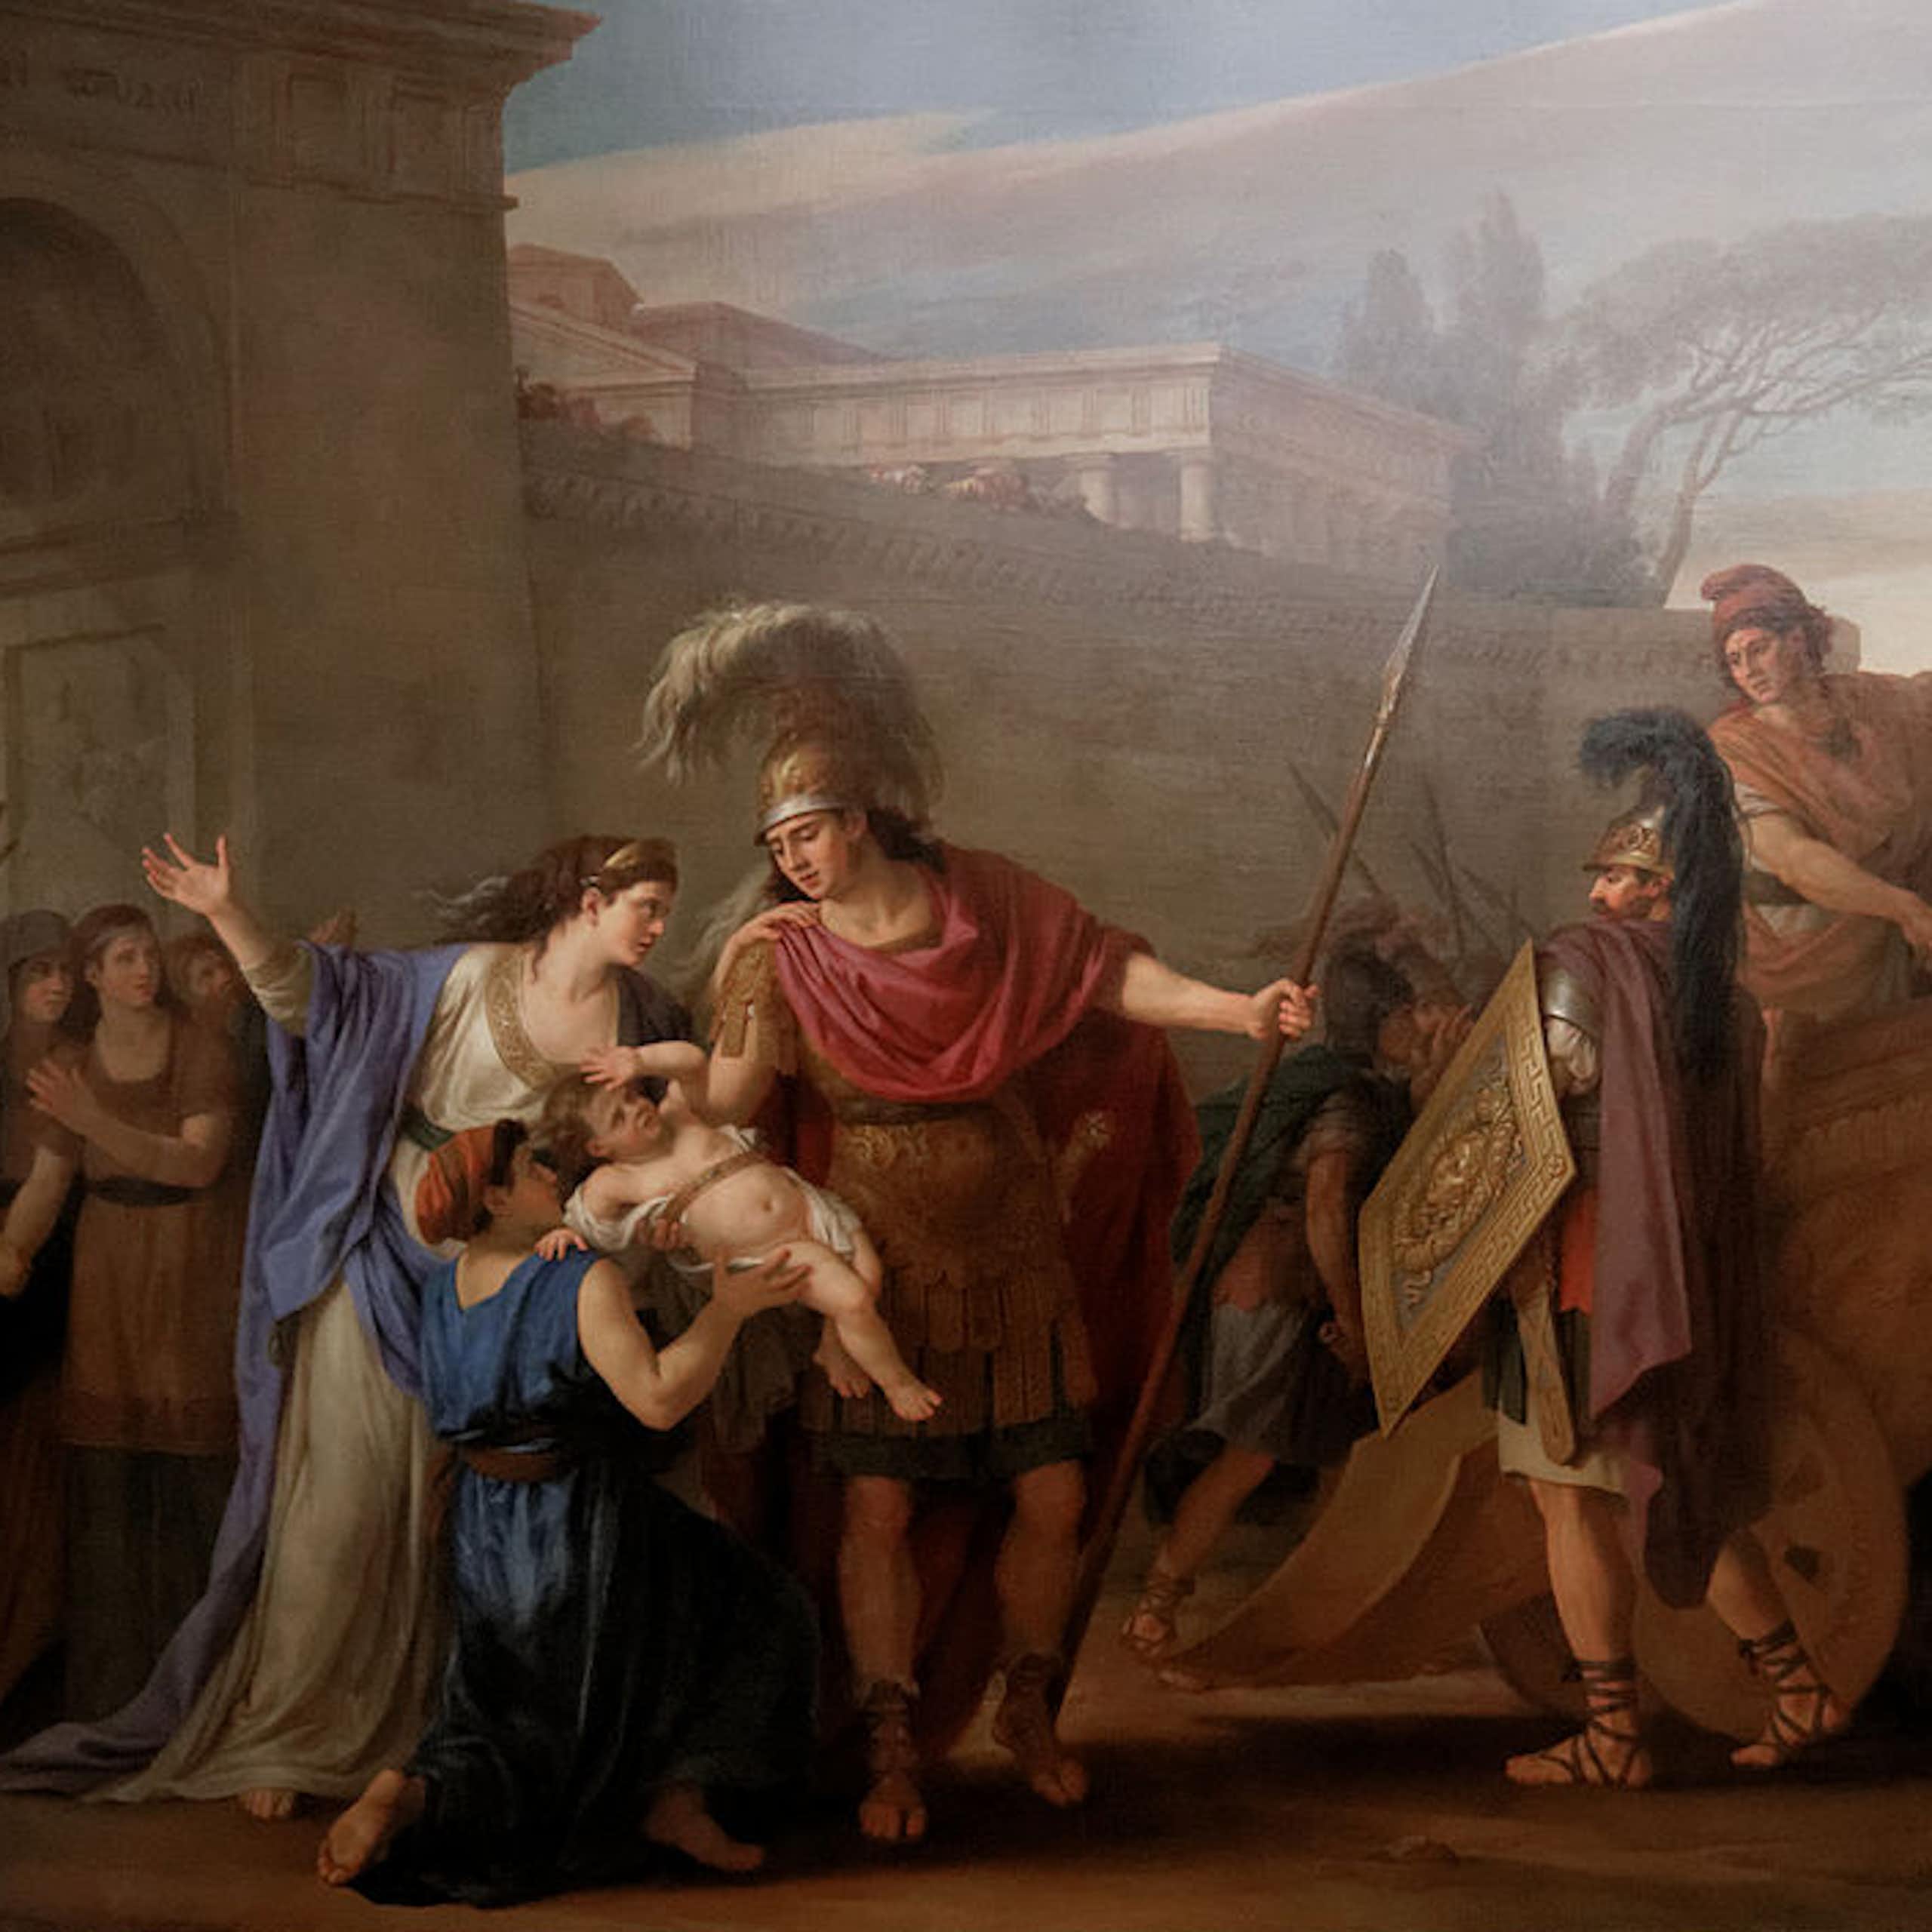 L’amour maternel dans la Grèce antique